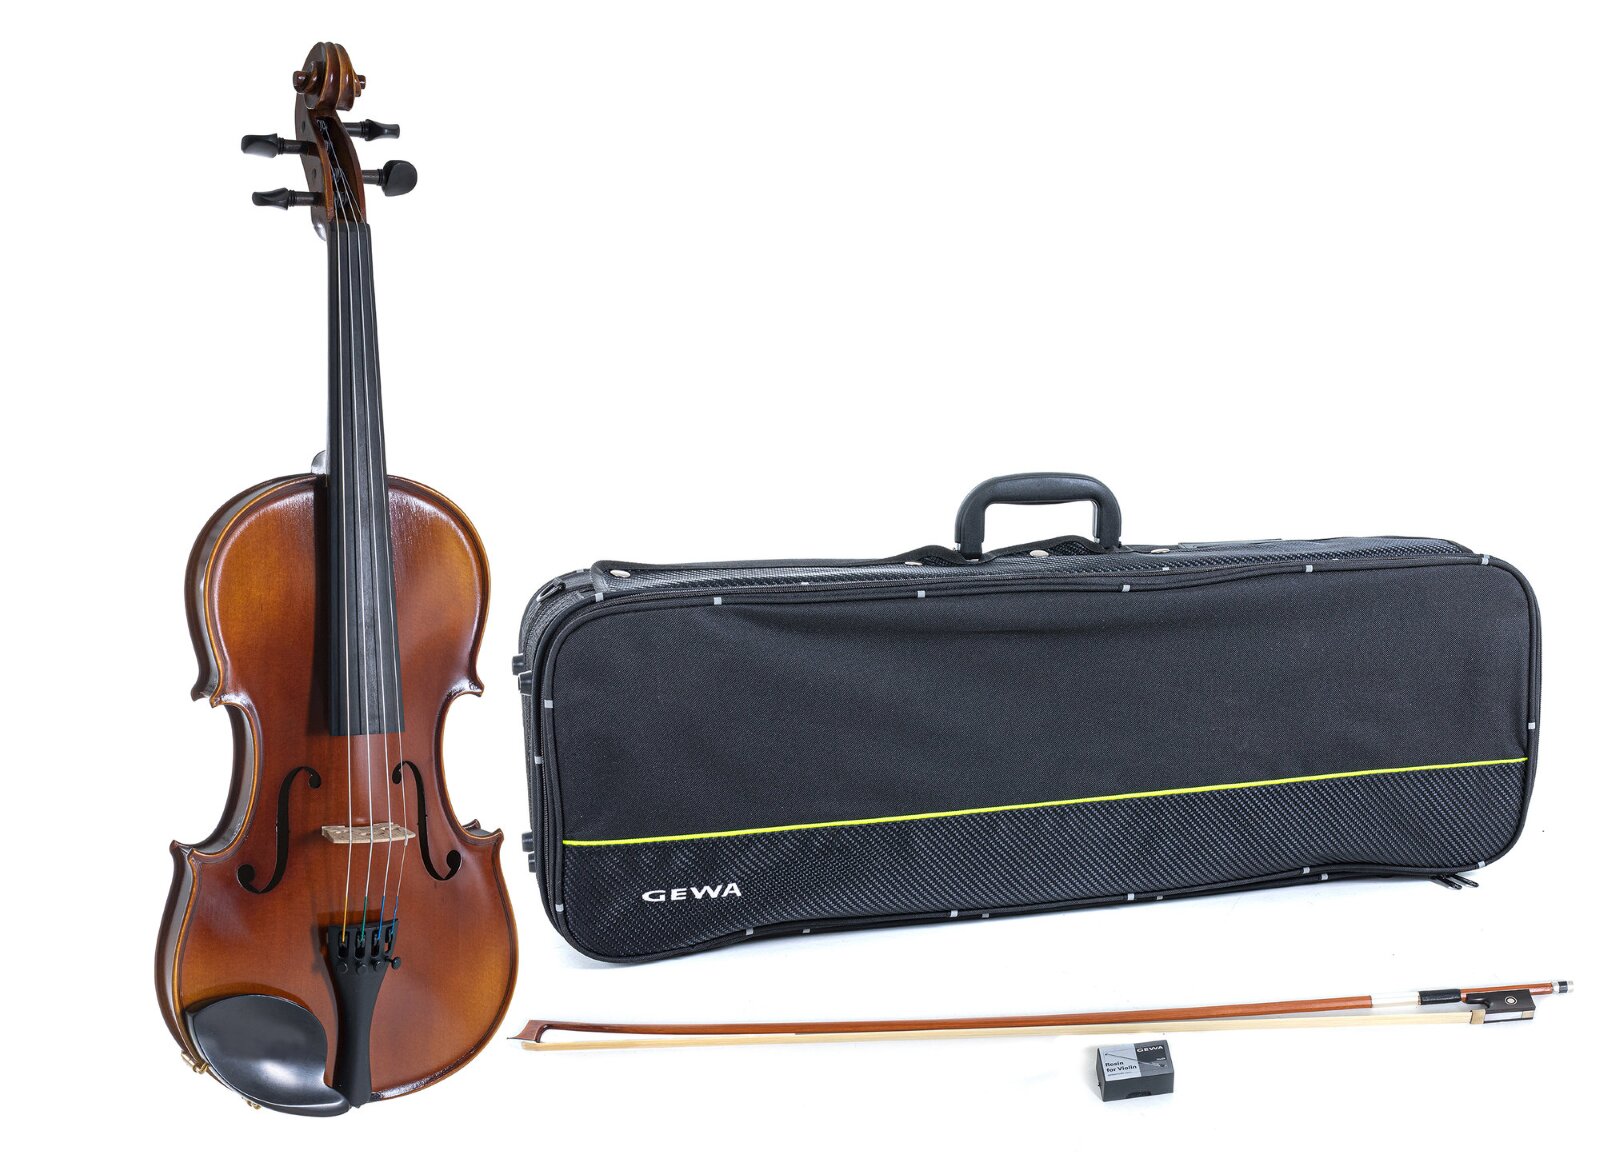 Gewa Ensemble Allegro Violine 1/2 (Violine, Etui, Bogen, Kinnhalter) : photo 1